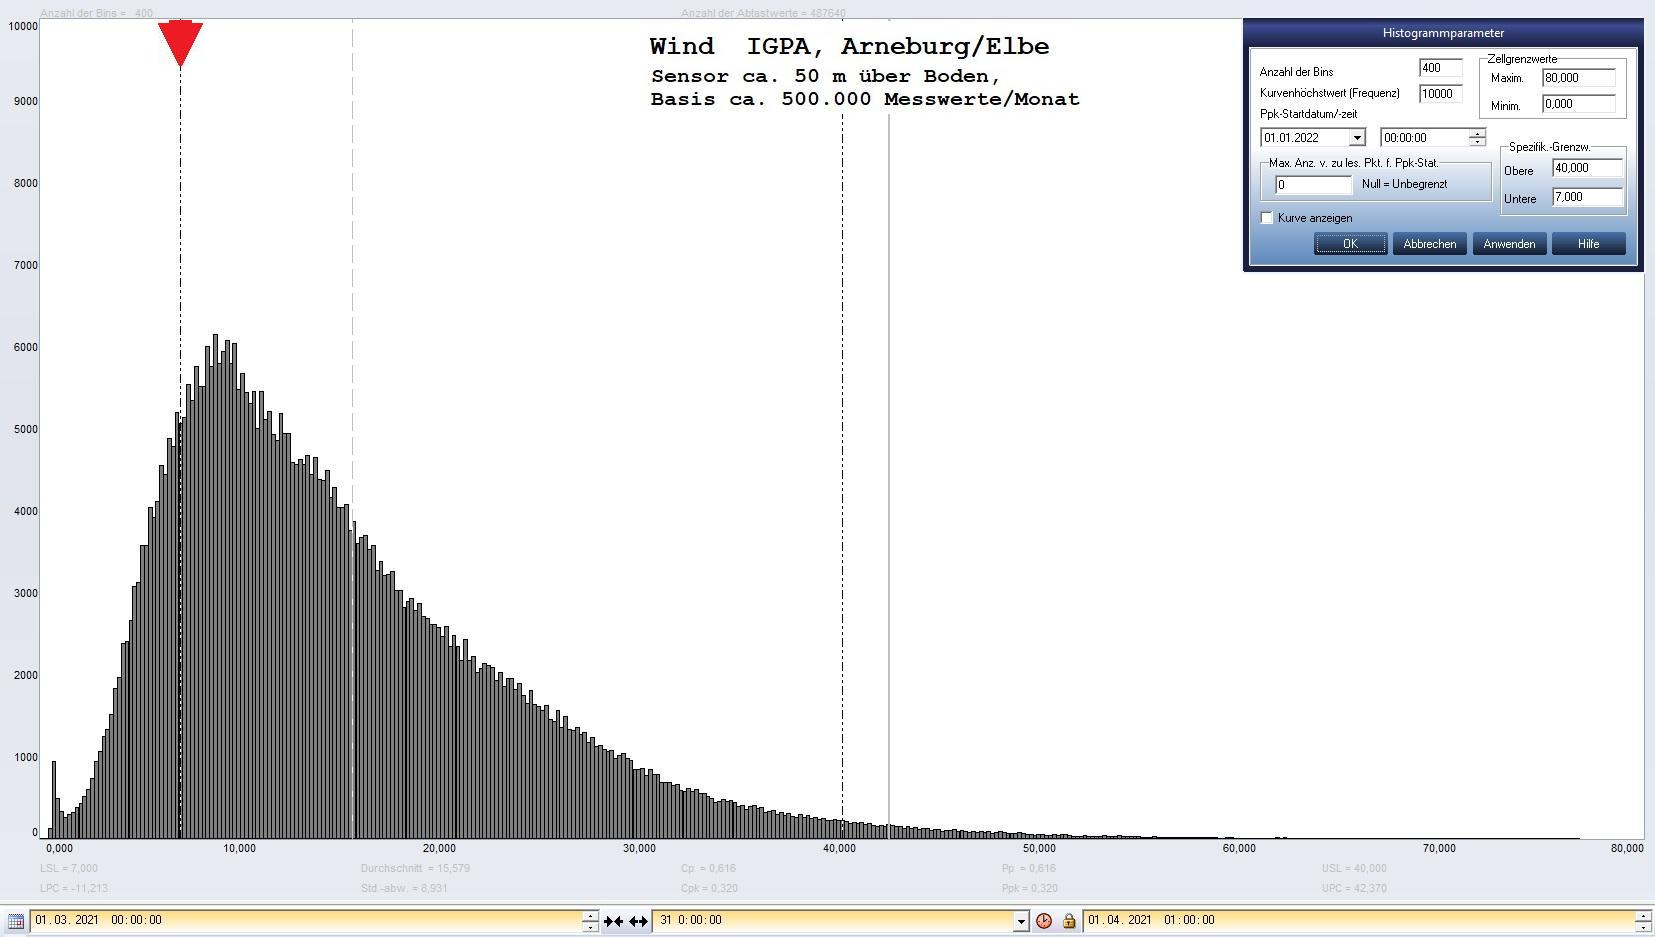 Arneburg Histogramm Winddaten Monat Mrz 2021, 
  Sensor auf Gebude, ca. 50 m ber Erdboden, Basis: 5s-Aufzeichnung